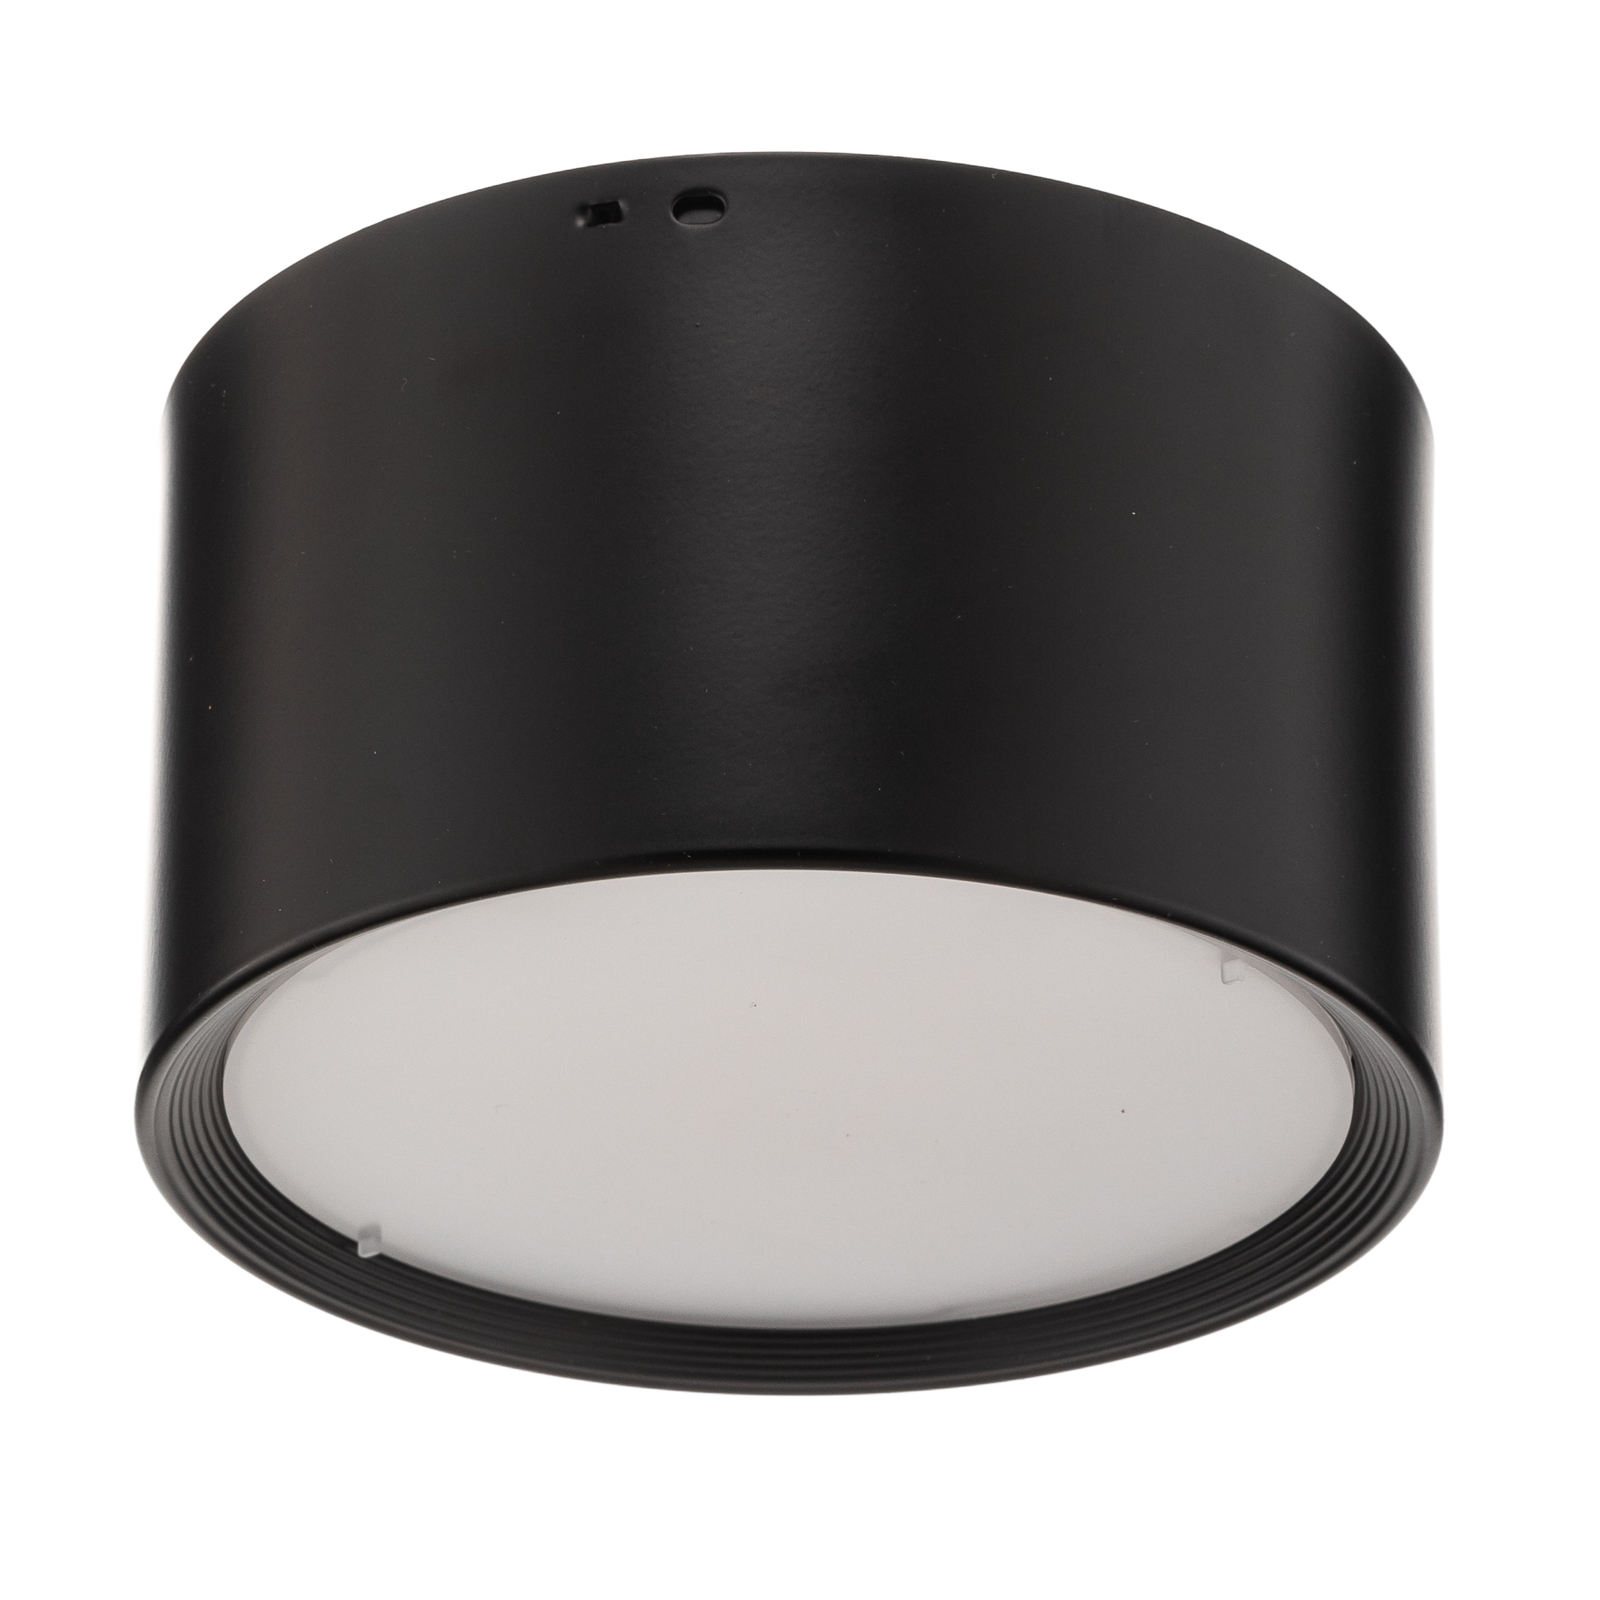 Juodos spalvos "Ita" LED šviestuvas su difuzoriumi, Ø 15 cm